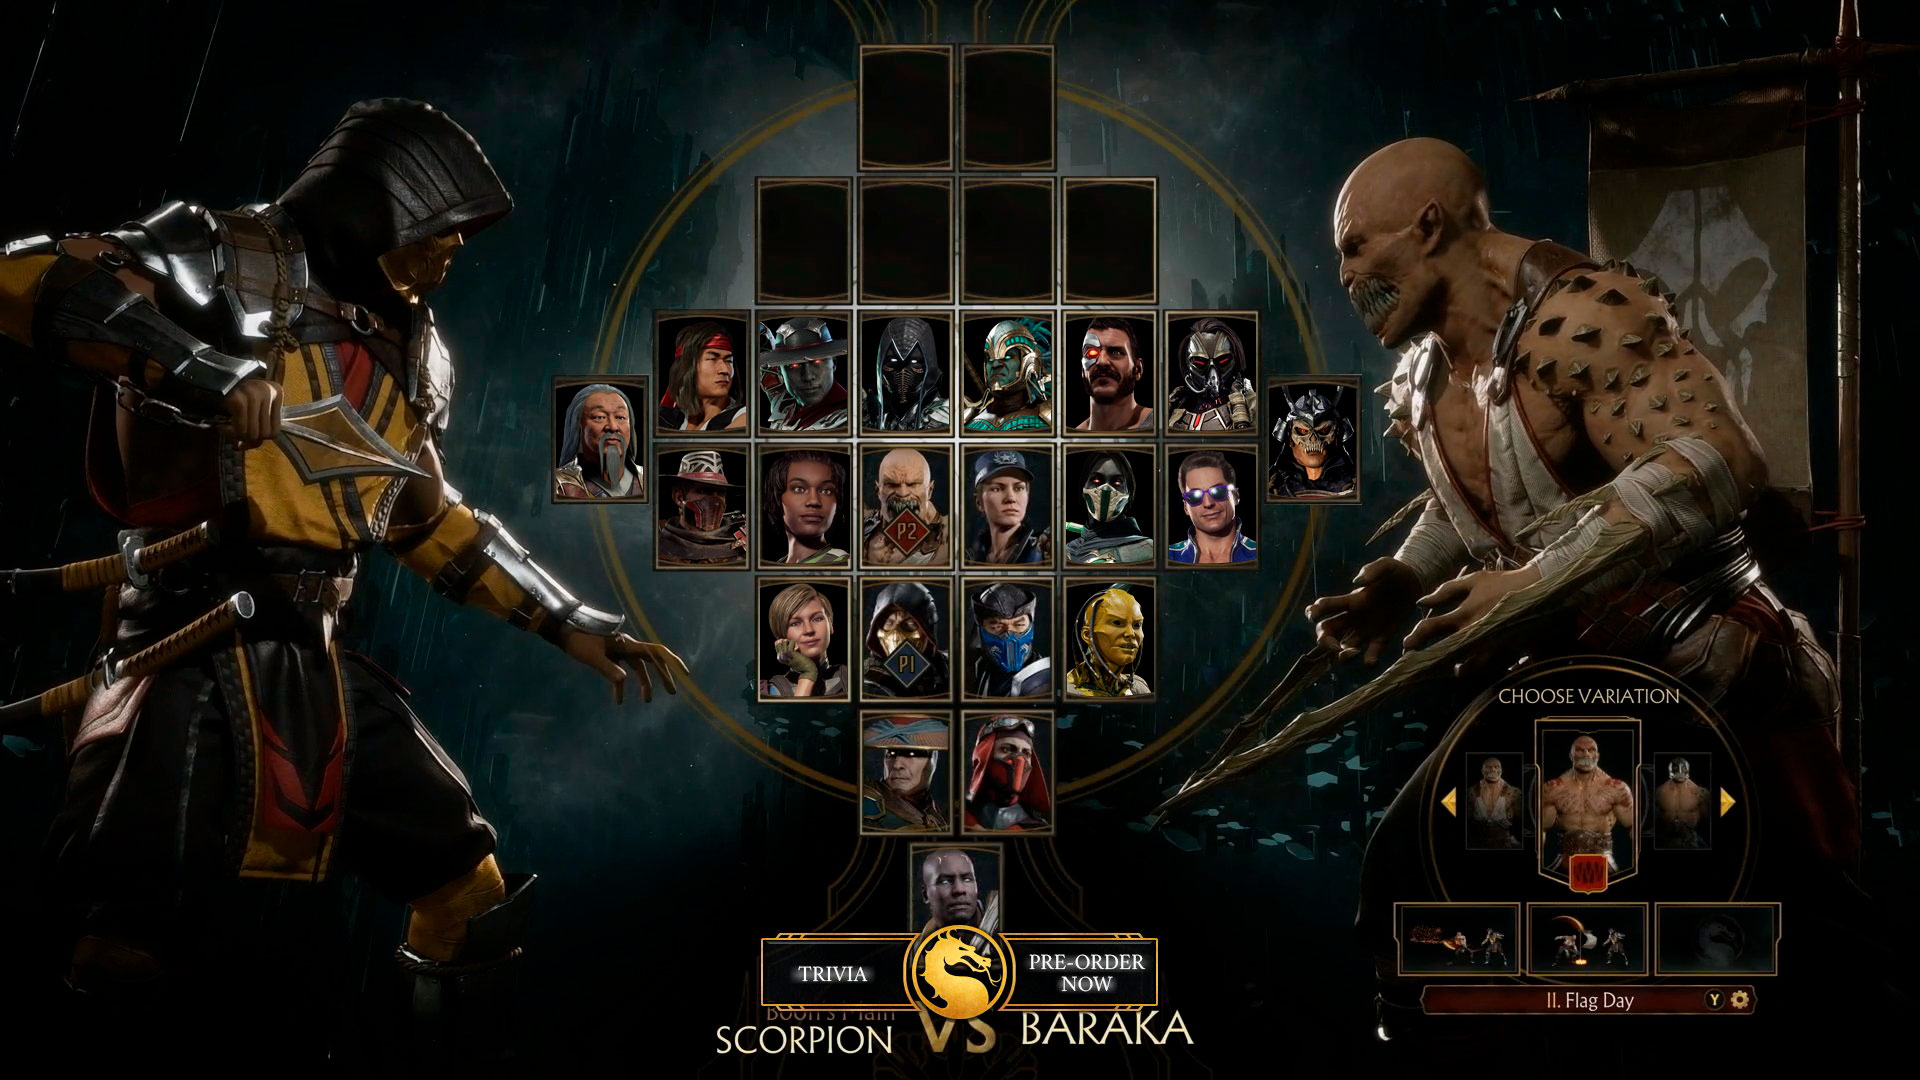 Mortal Kombat X: Erron Black e Baraka são mostrados em novas imagens